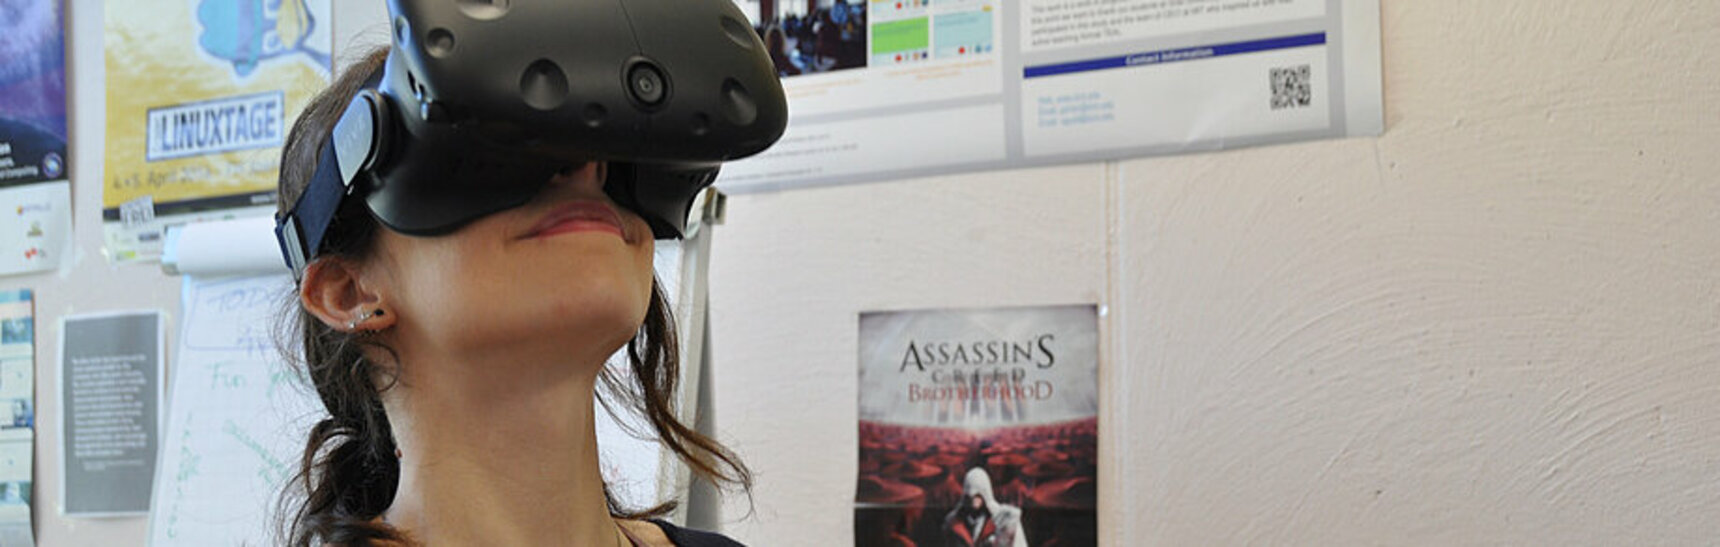 Johanna Pirker testet das virtuelle Physiklabor MAROON mithilfe einer VR Brille